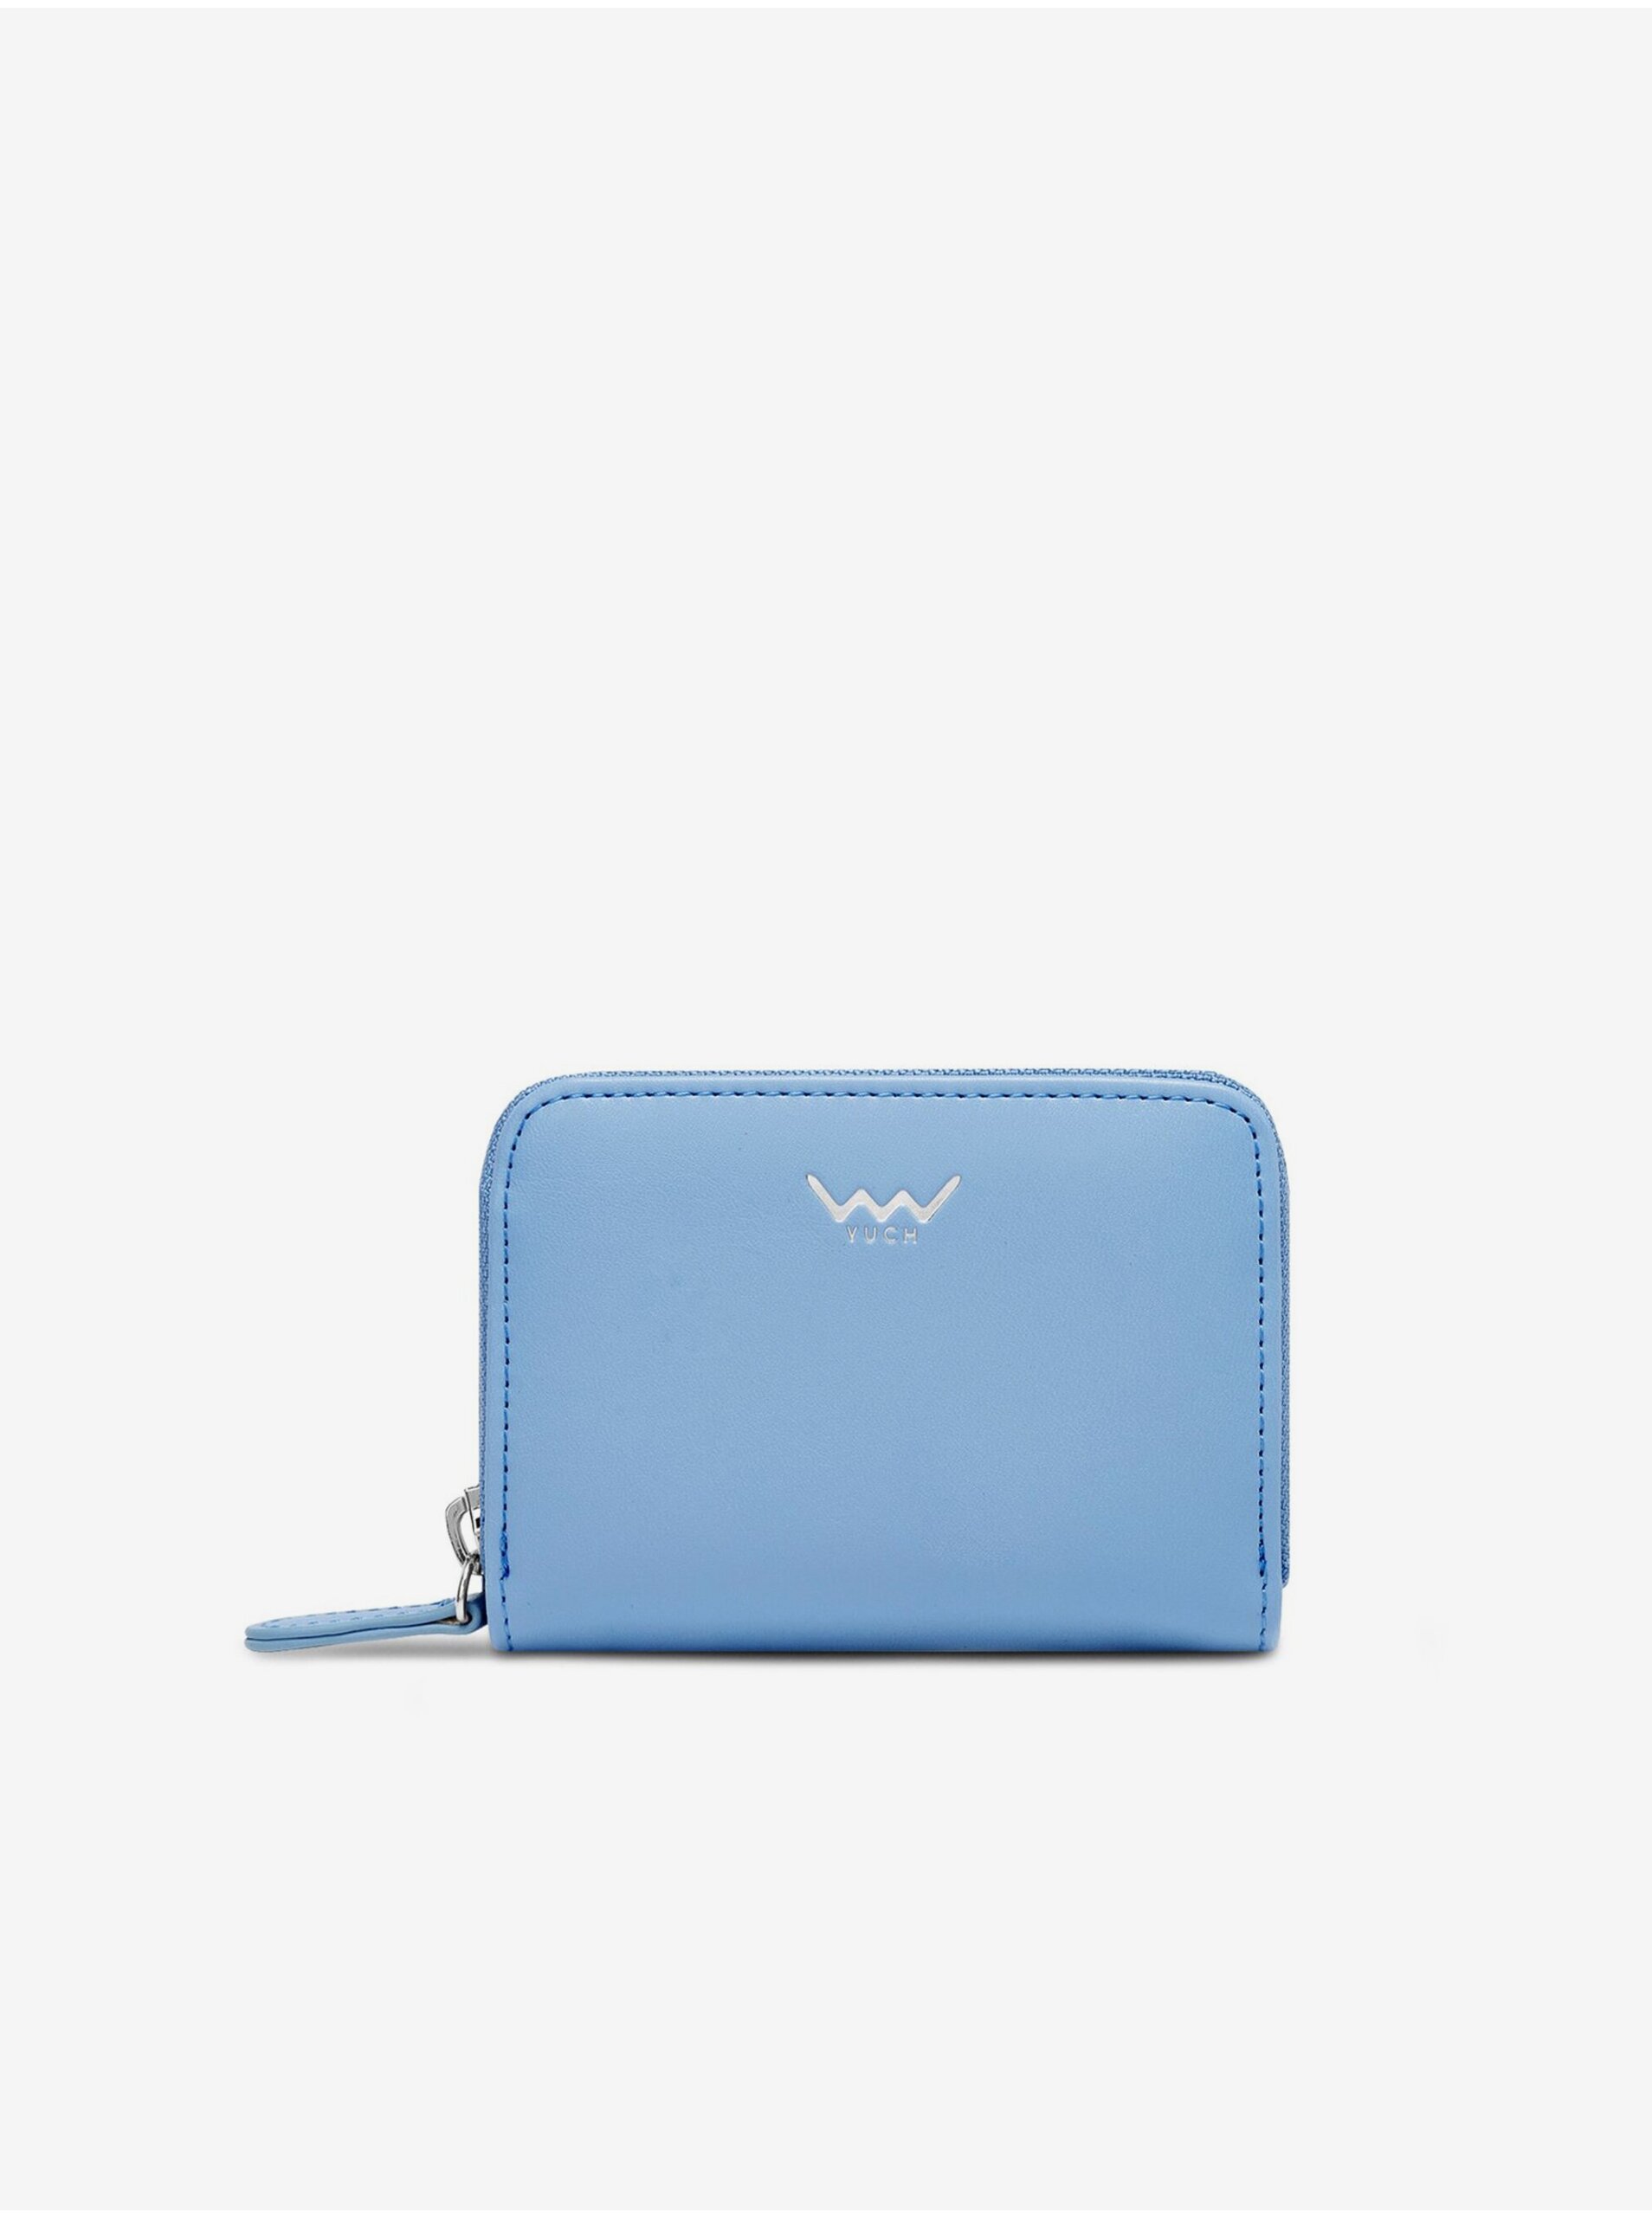 Lacno Modrá dámska peňaženka Vuch Luxia